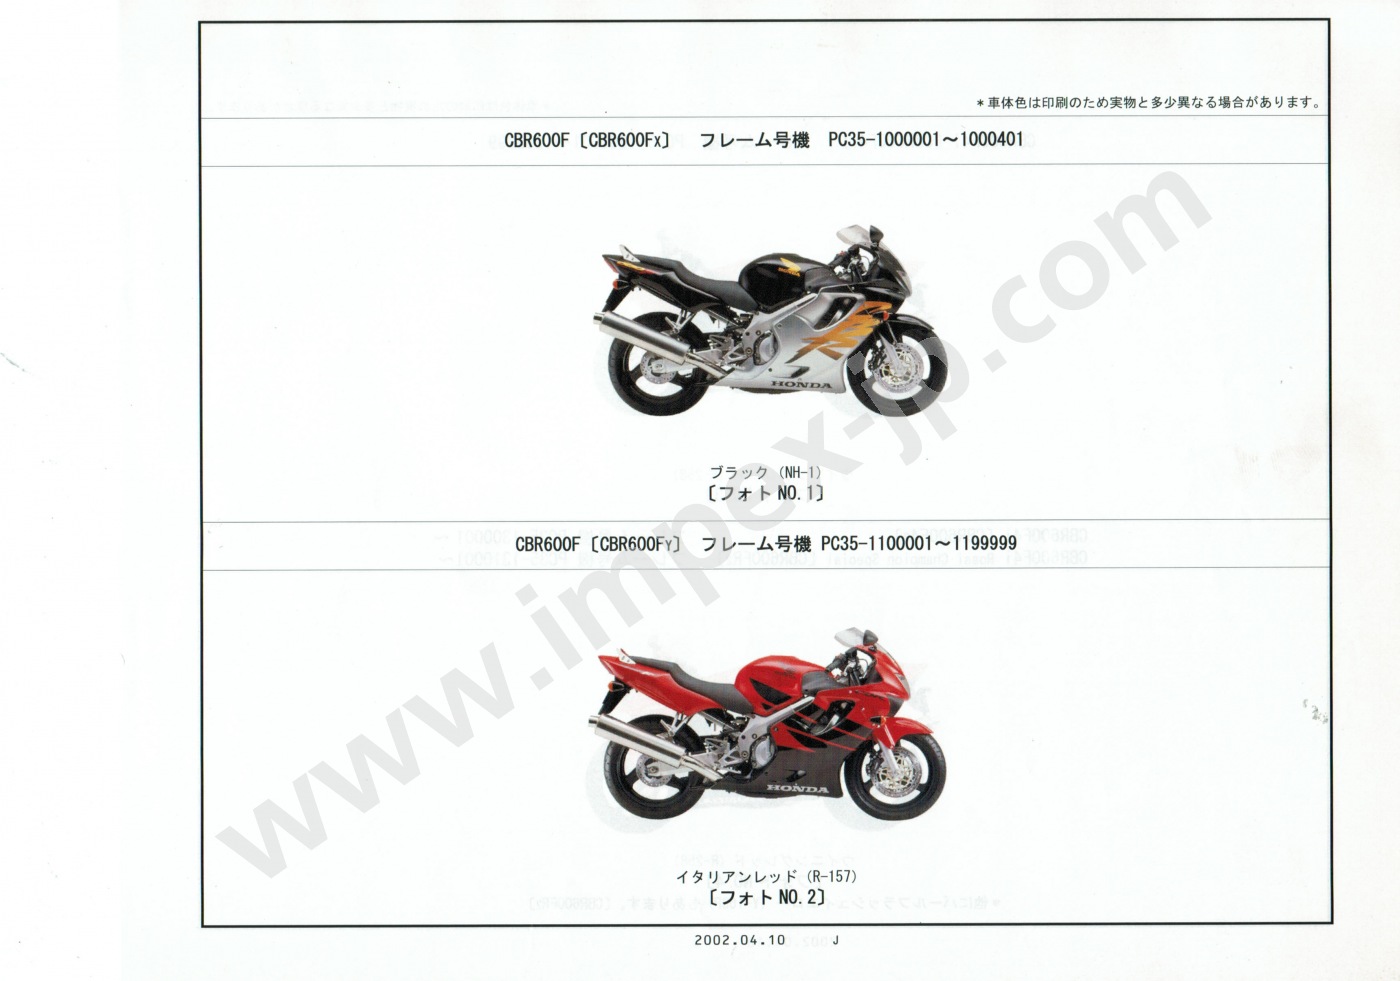 Honda cbr 600 f4i — универсальный спортивно-туристический мотоцикл